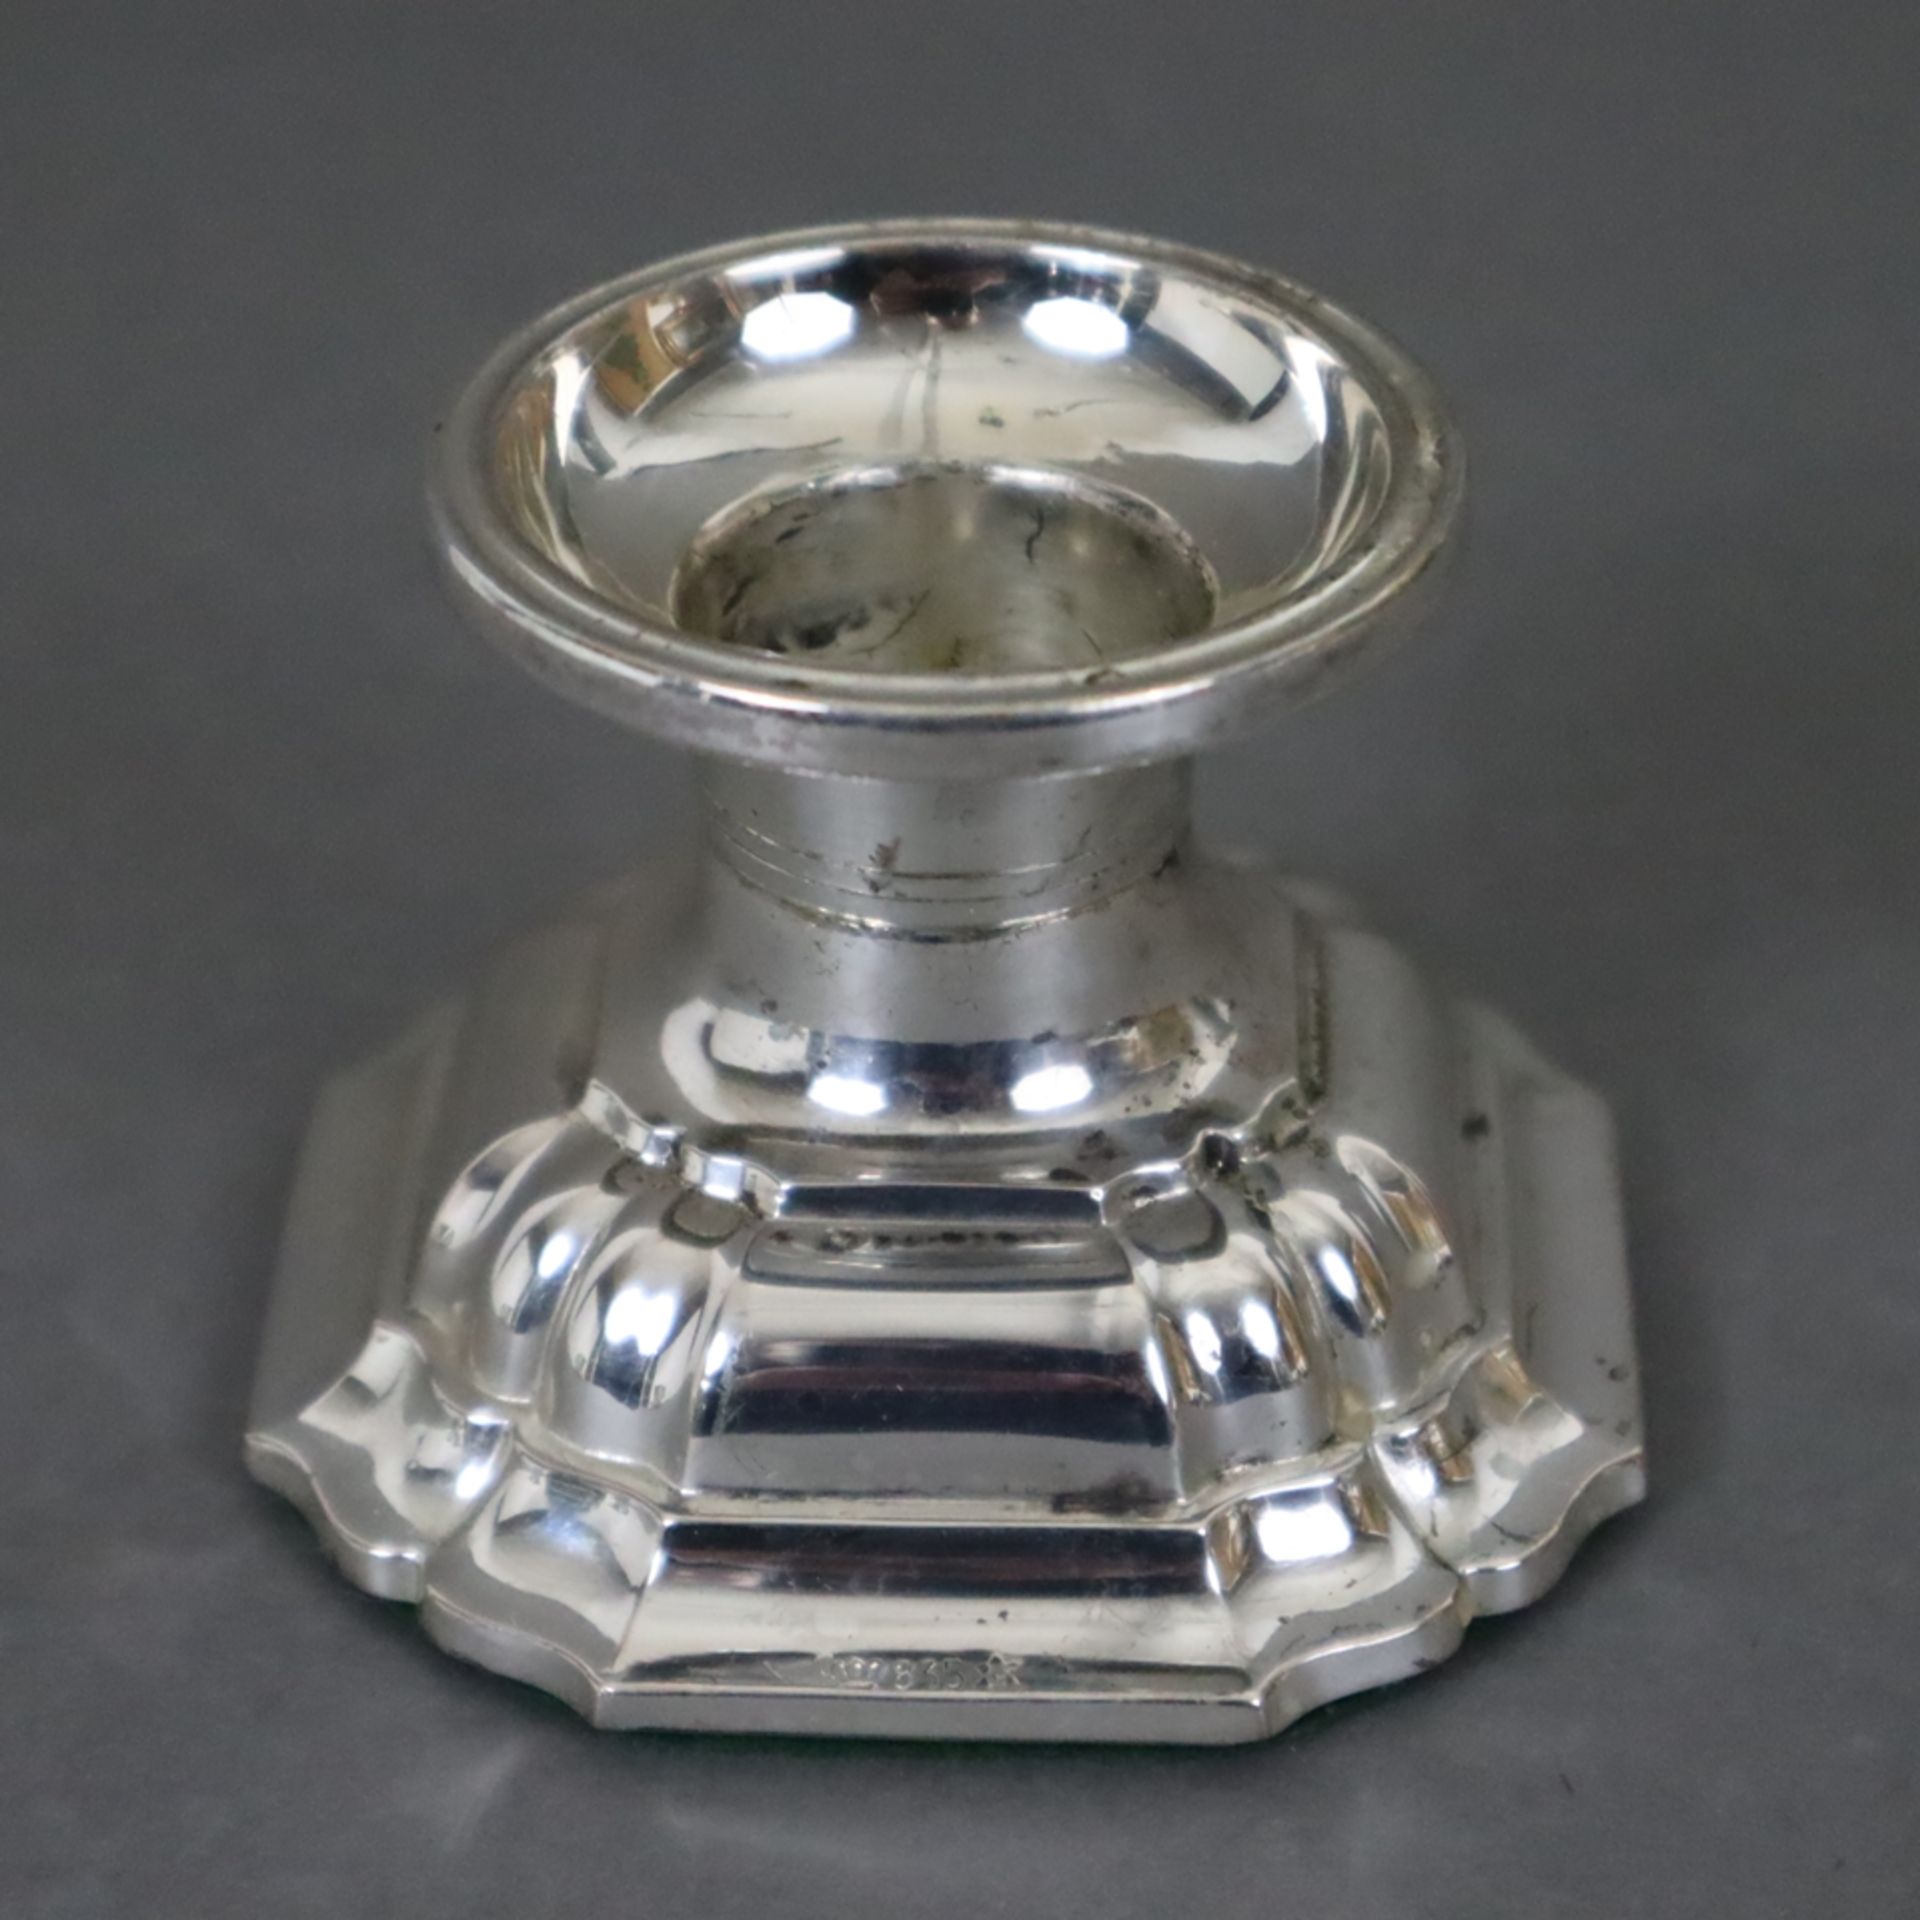 Ein Paar Kerzenleuchter - 835er Silber, runde Tülle, getreppter Stand mit passig eingezogenen Ecken - Image 2 of 5